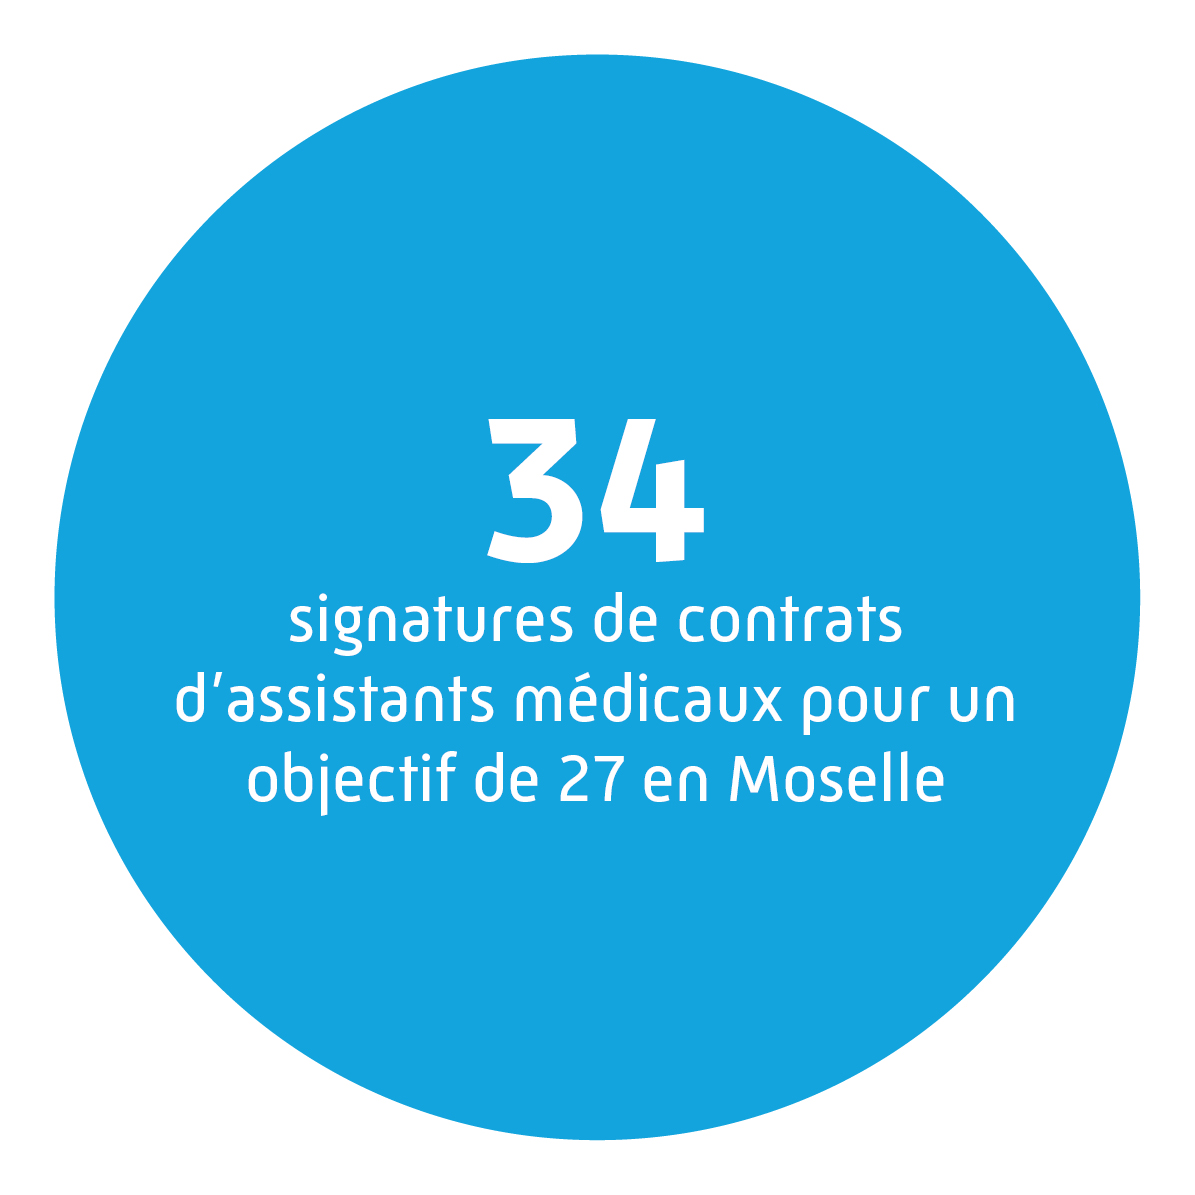 34 signatures de contrats d'assistants médicaux pour un objectif de 27 en Moselle.